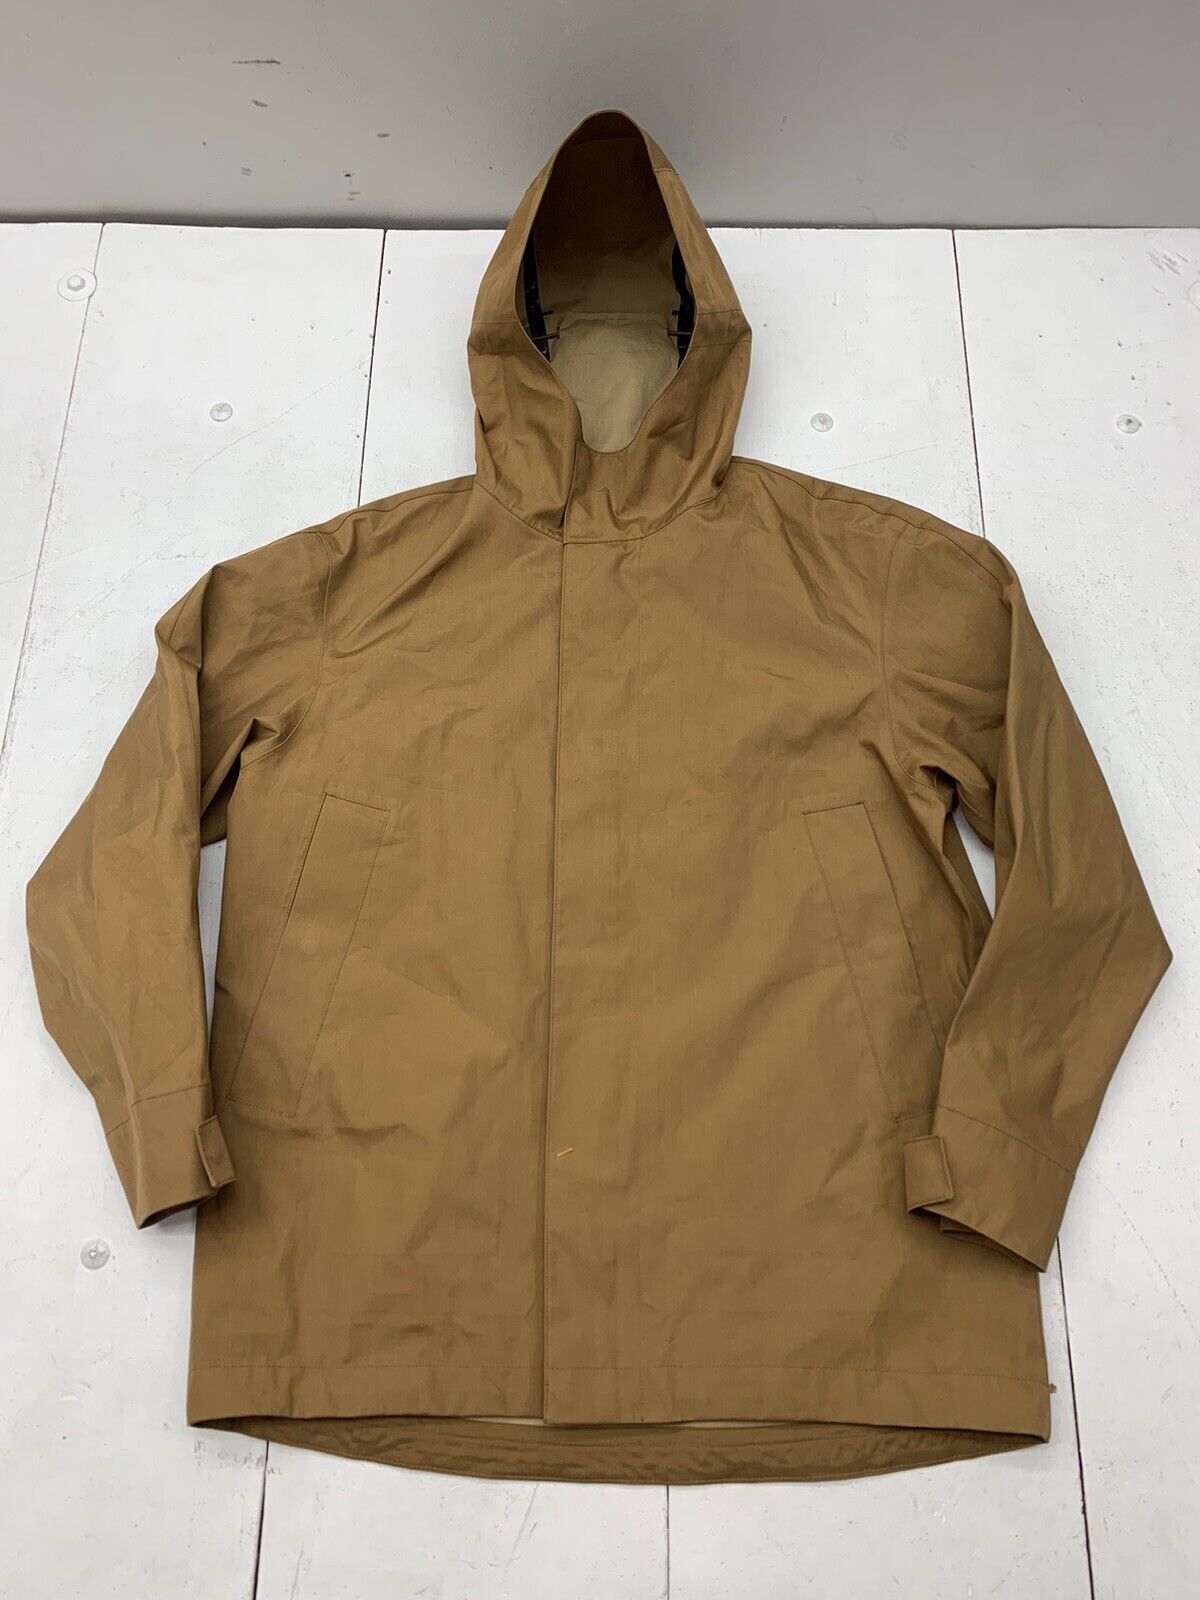 Uniqlo Mens Brown Waterproof Full Zip Jacket Size Large